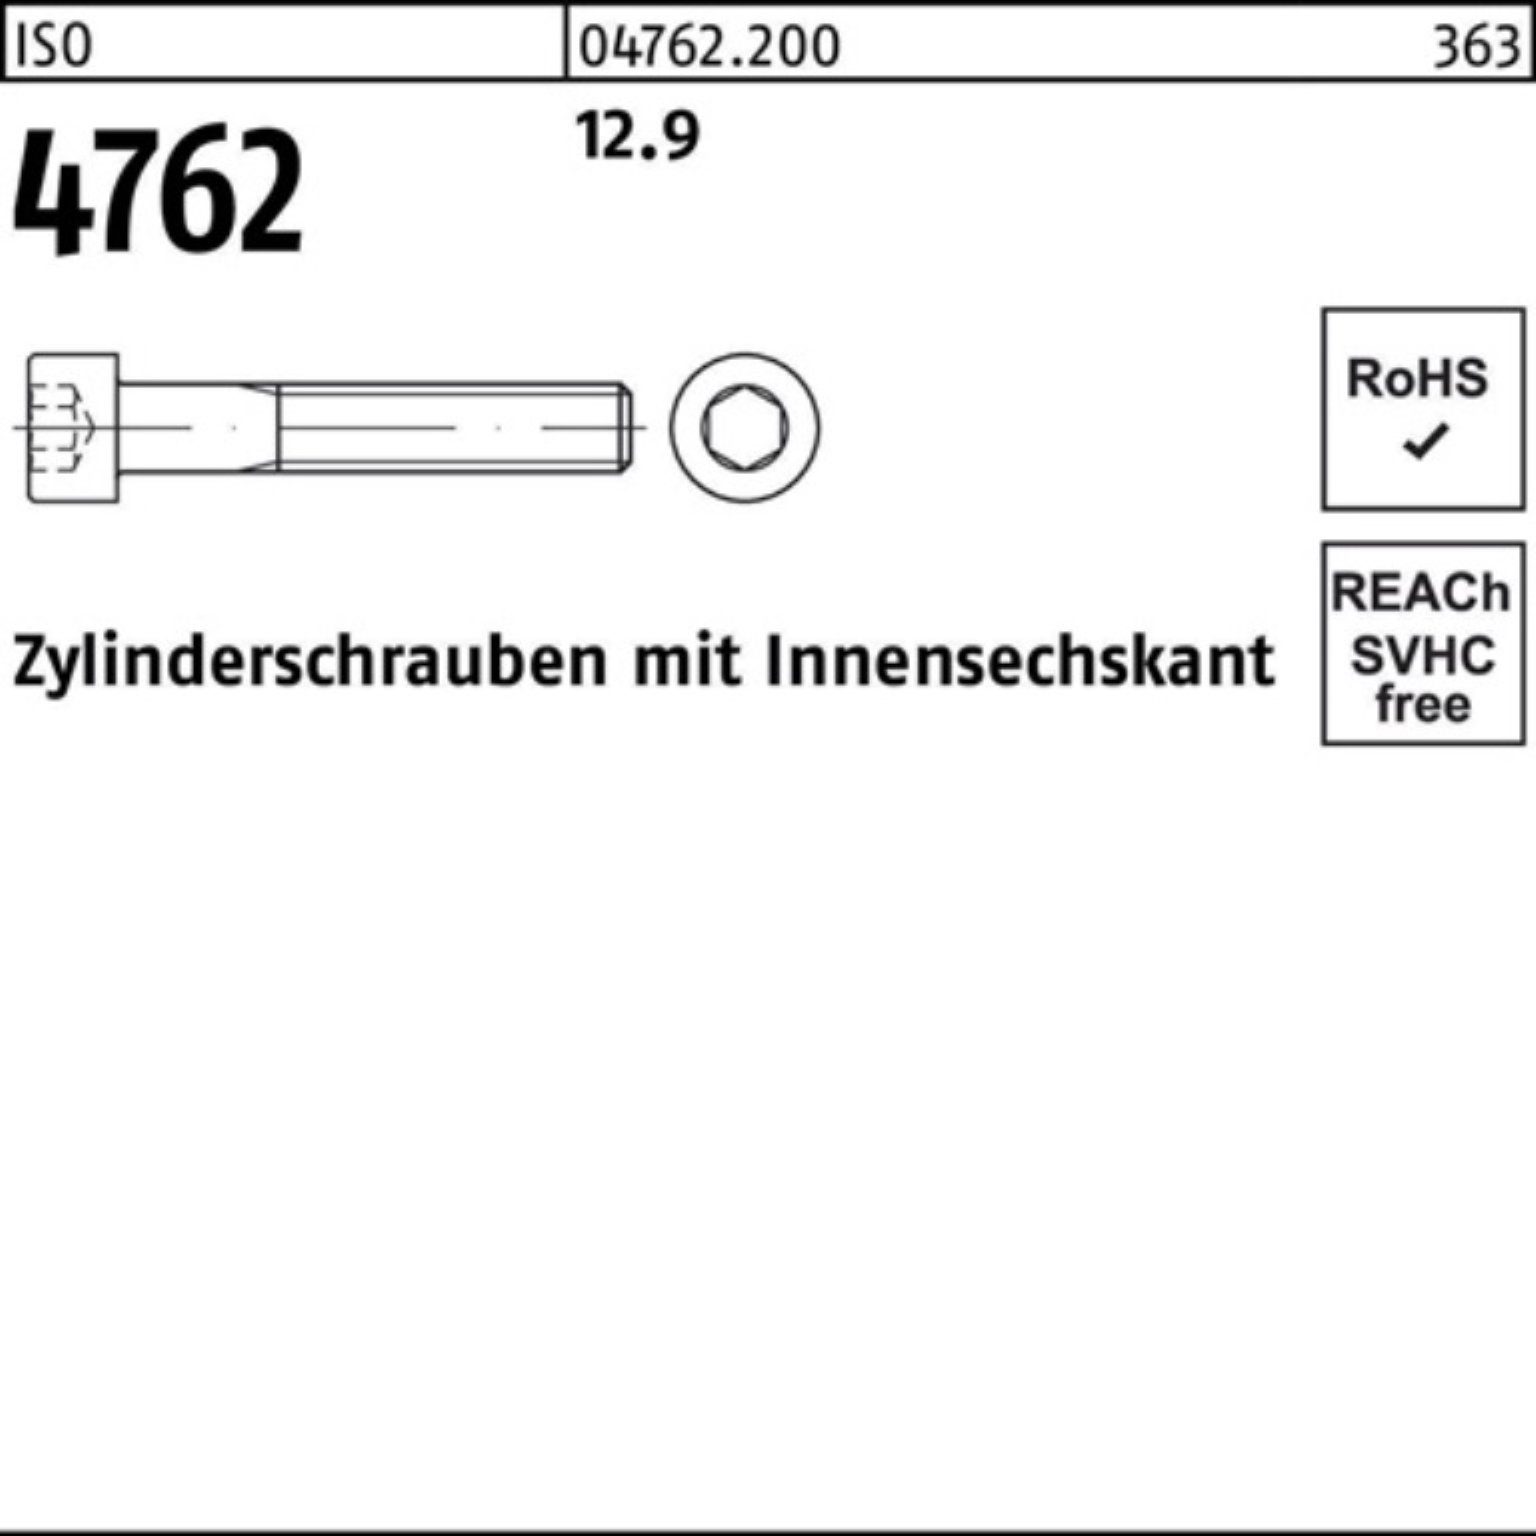 [Am beliebtesten] Reyher Zylinderschraube 200er Pack Zylinderschraube M5x Innen-6kt 12.9 ISO 50 4762 200 Stück